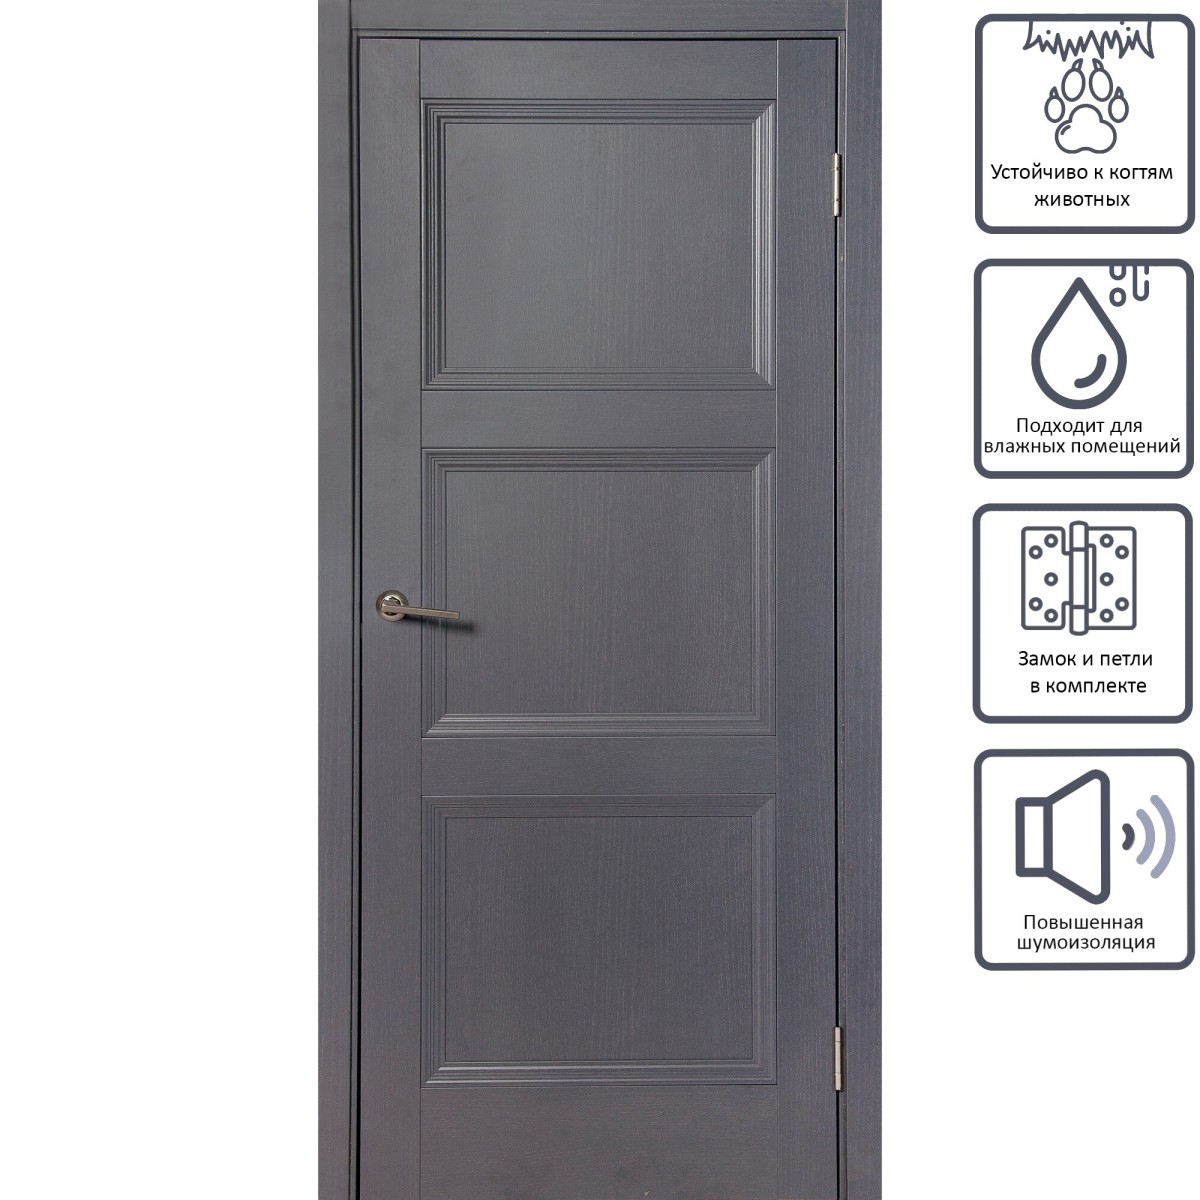 Дверь межкомнатная глухая с замком и петлями в комплекте Трилло 90x200 см , Hardflex, цвет грей